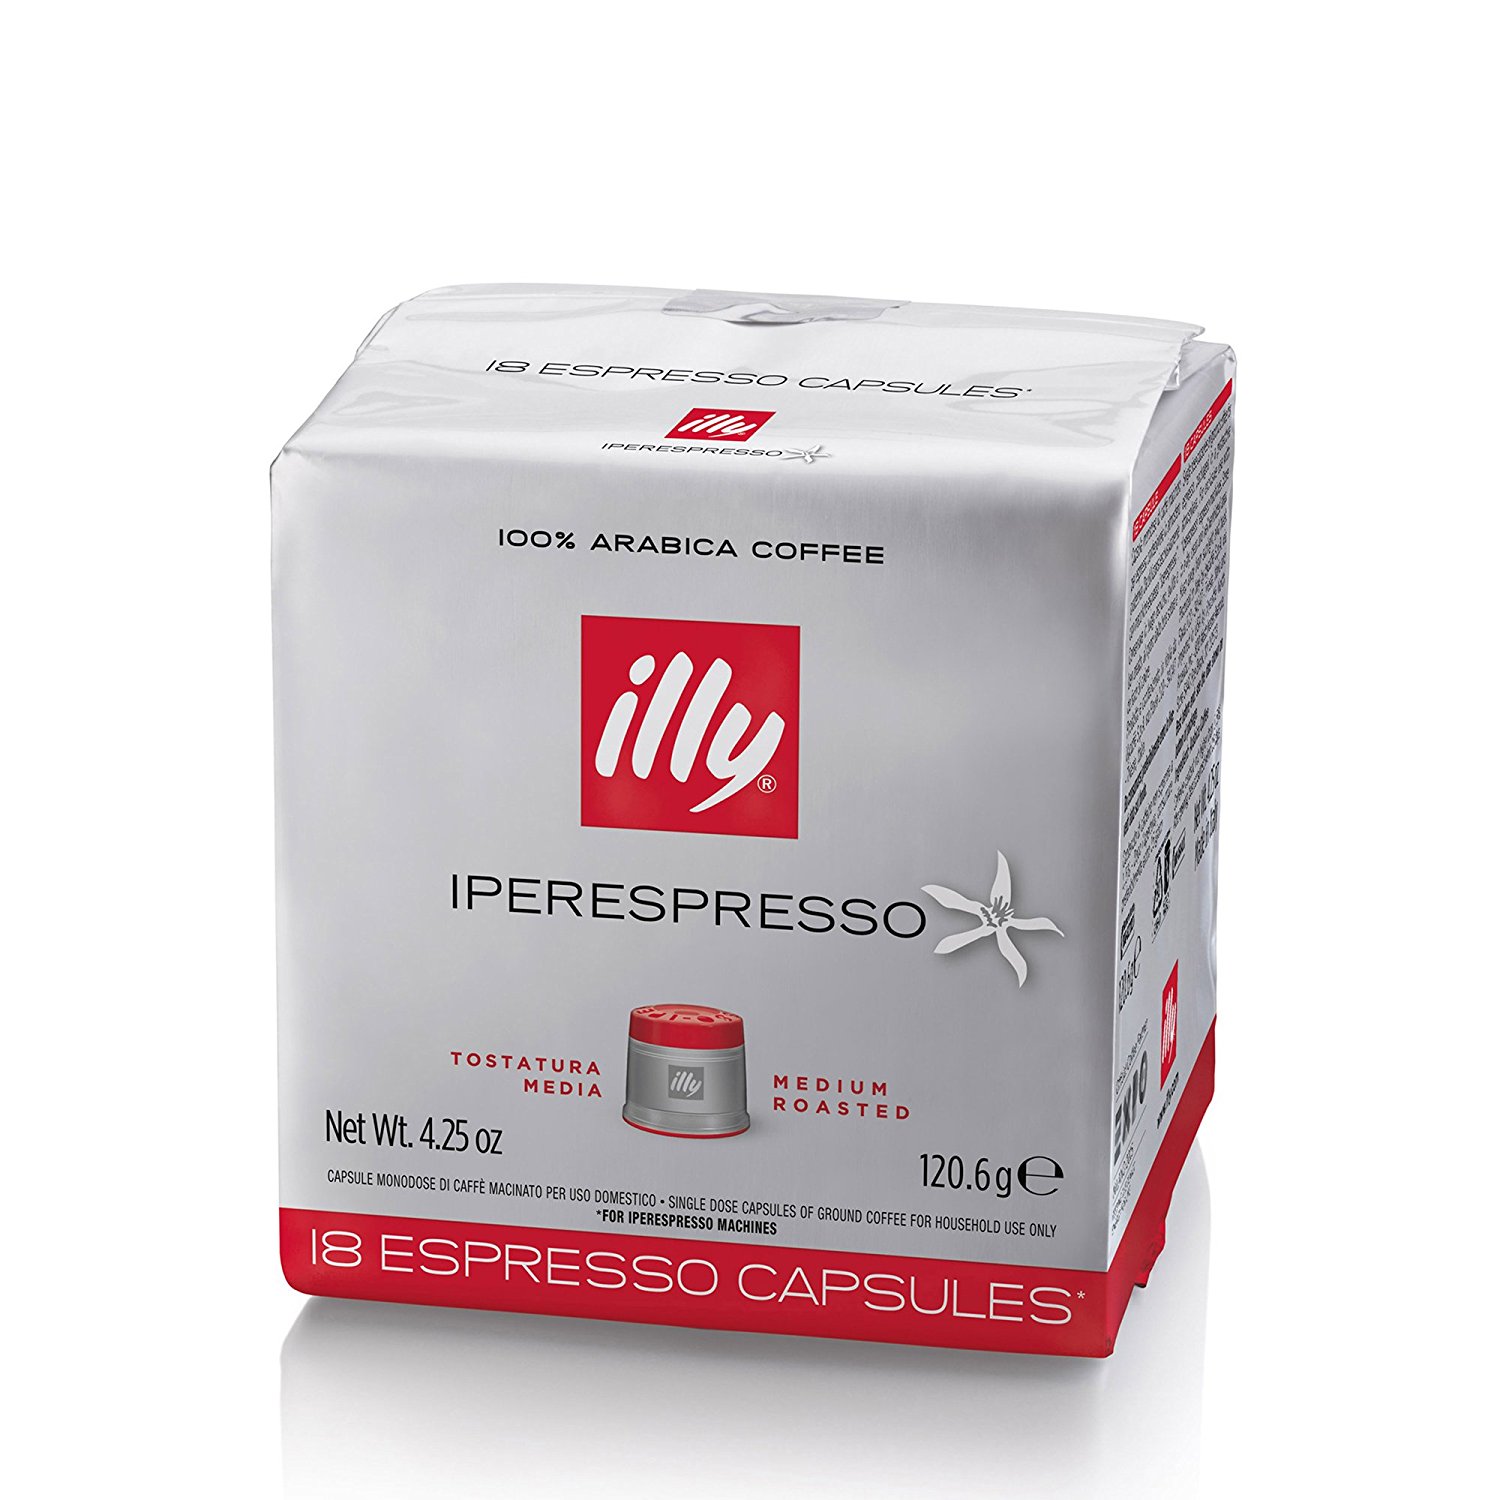 Immagine 2 Tostatura Media - Capsule originali per Illy Iperesspresso